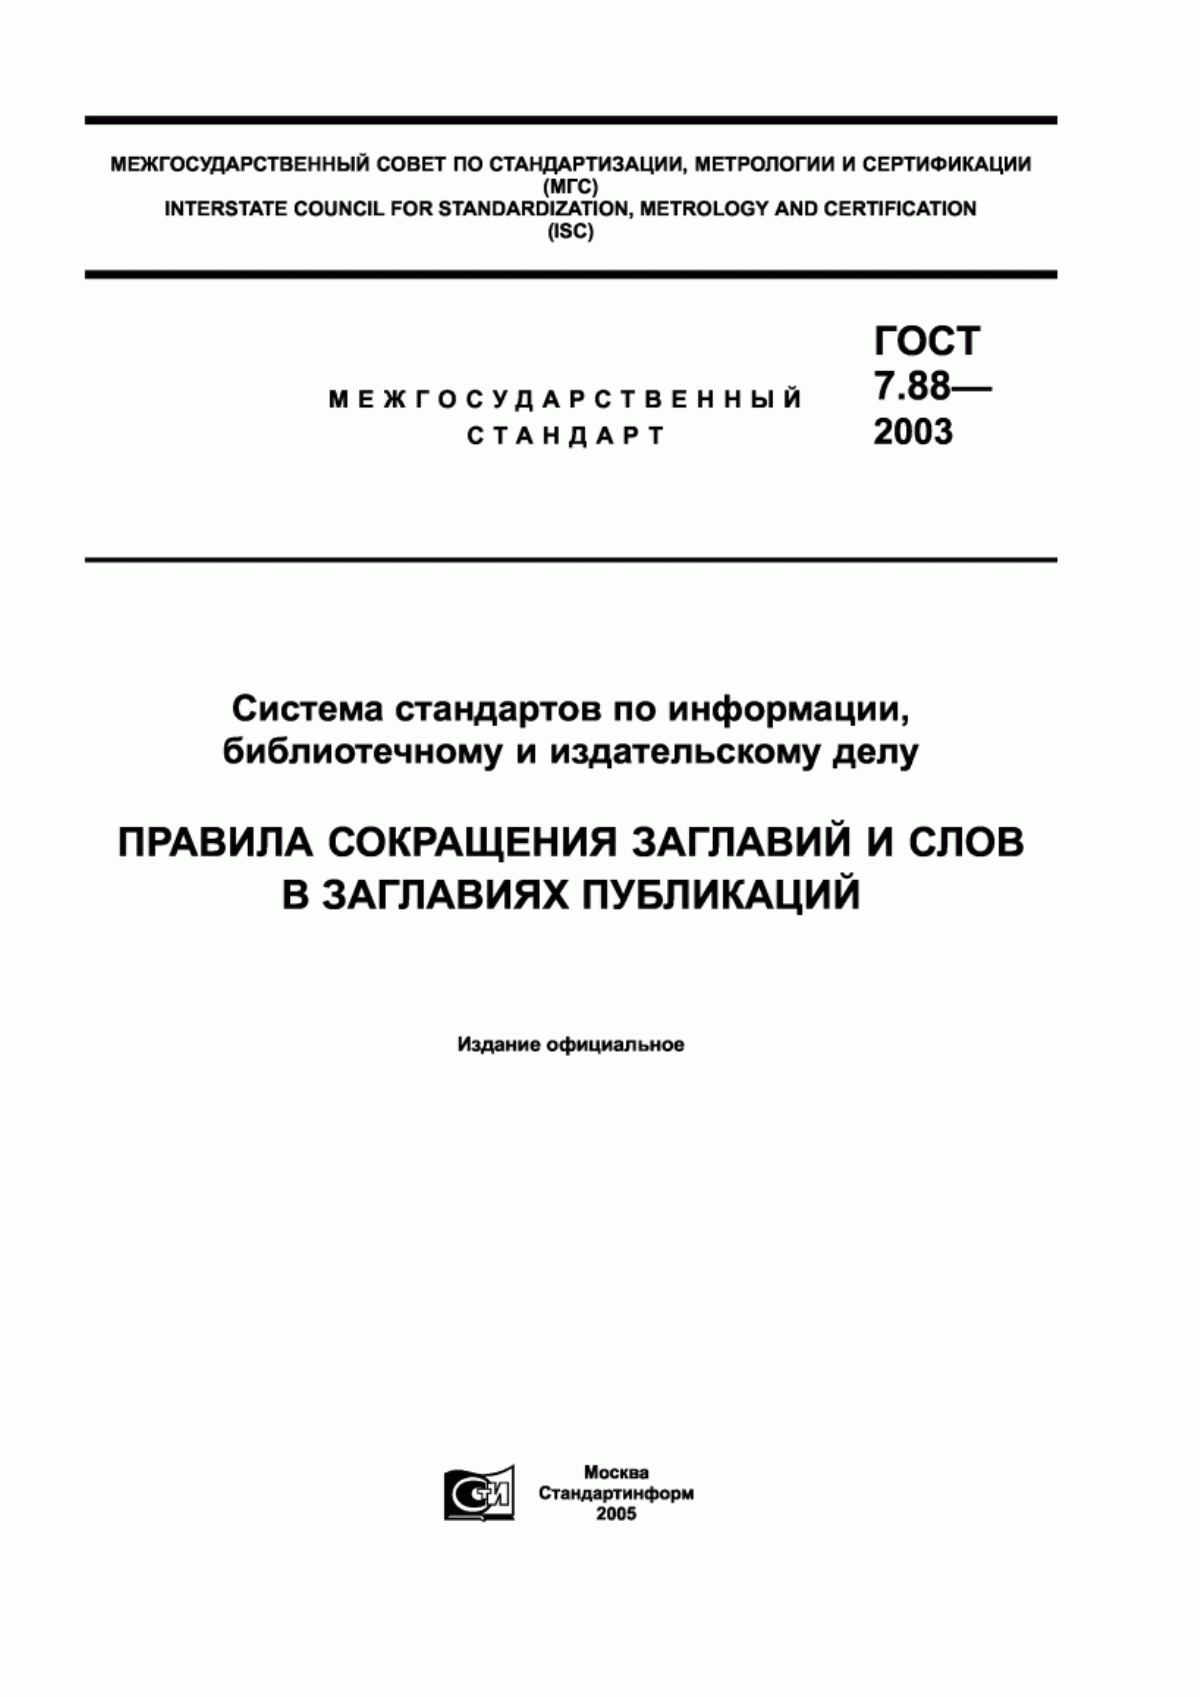 ГОСТ 7.88-2003 Система стандартов по информации, библиотечному и издательскому делу. Правила сокращения заглавий и слов в заглавиях публикаций